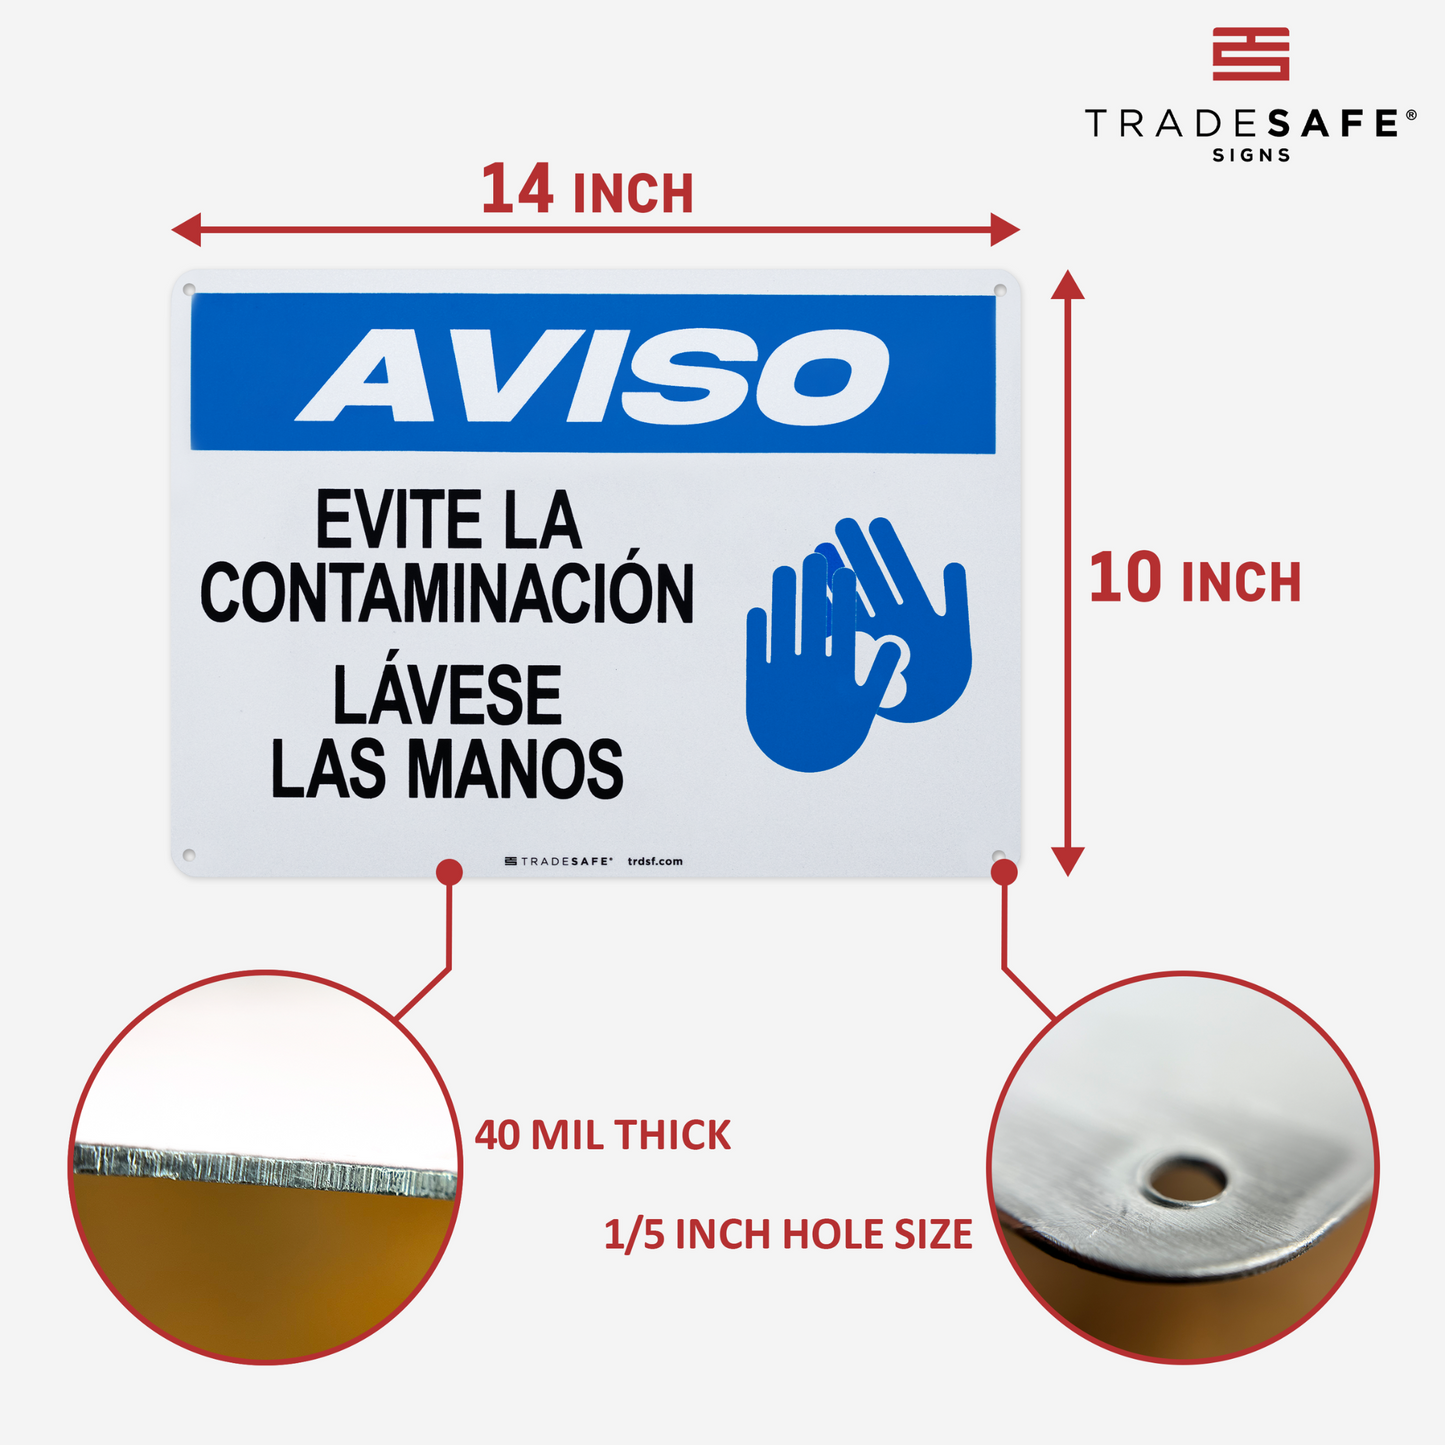 dimensions of aviso evite la contaminaćion lávese las manos sign